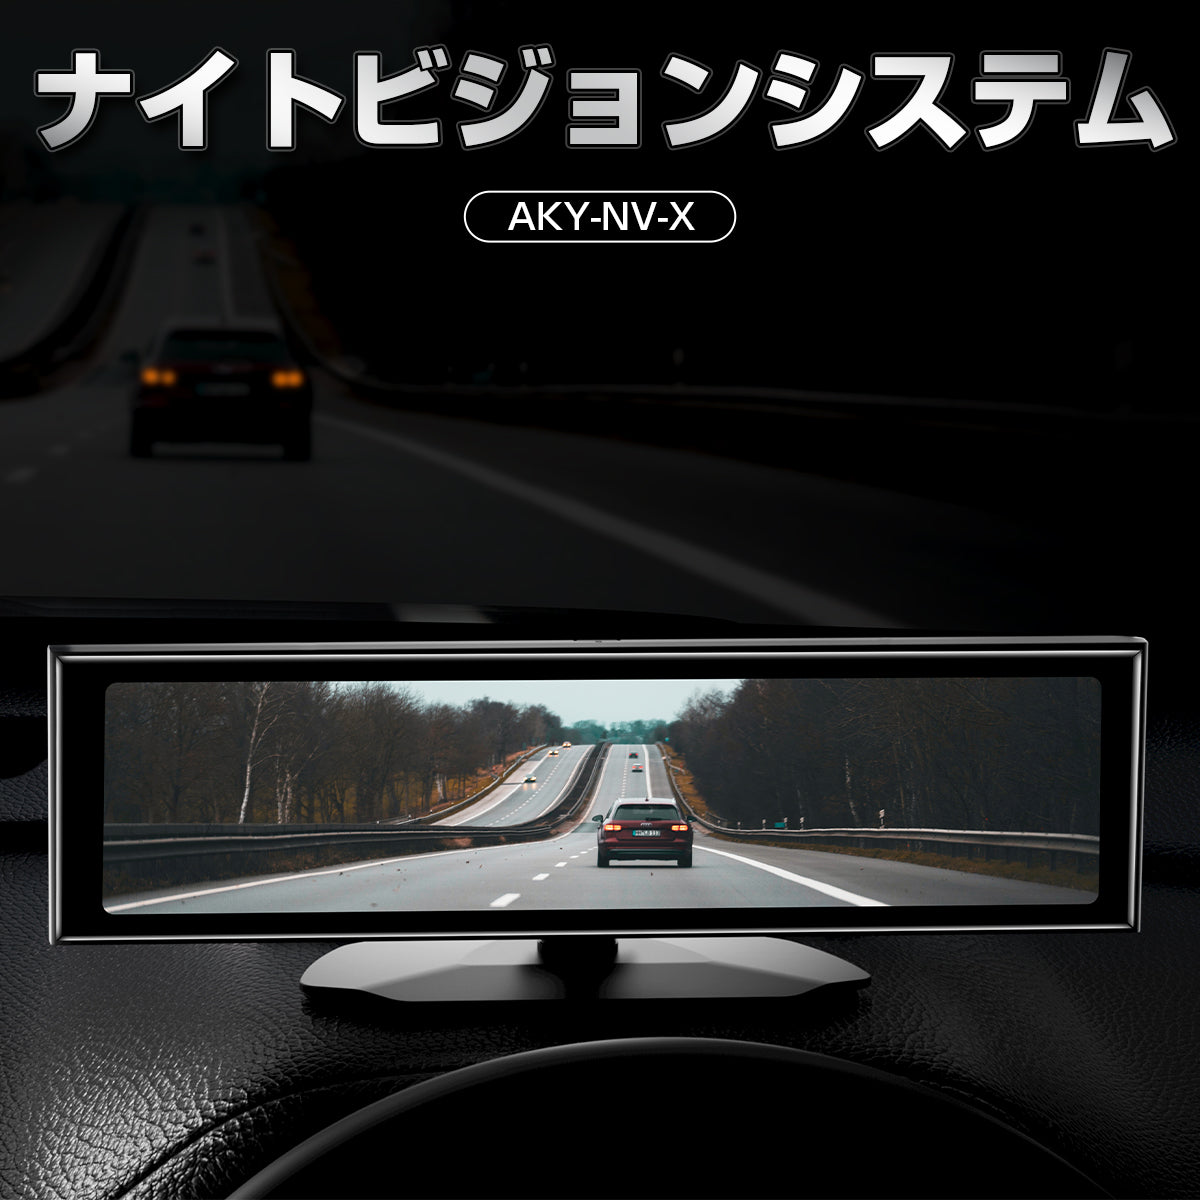 夜でも安心を！操作簡単な運転者必見のSONY製のセンサー付の次世代ナイトビジョン AKY-NV-X